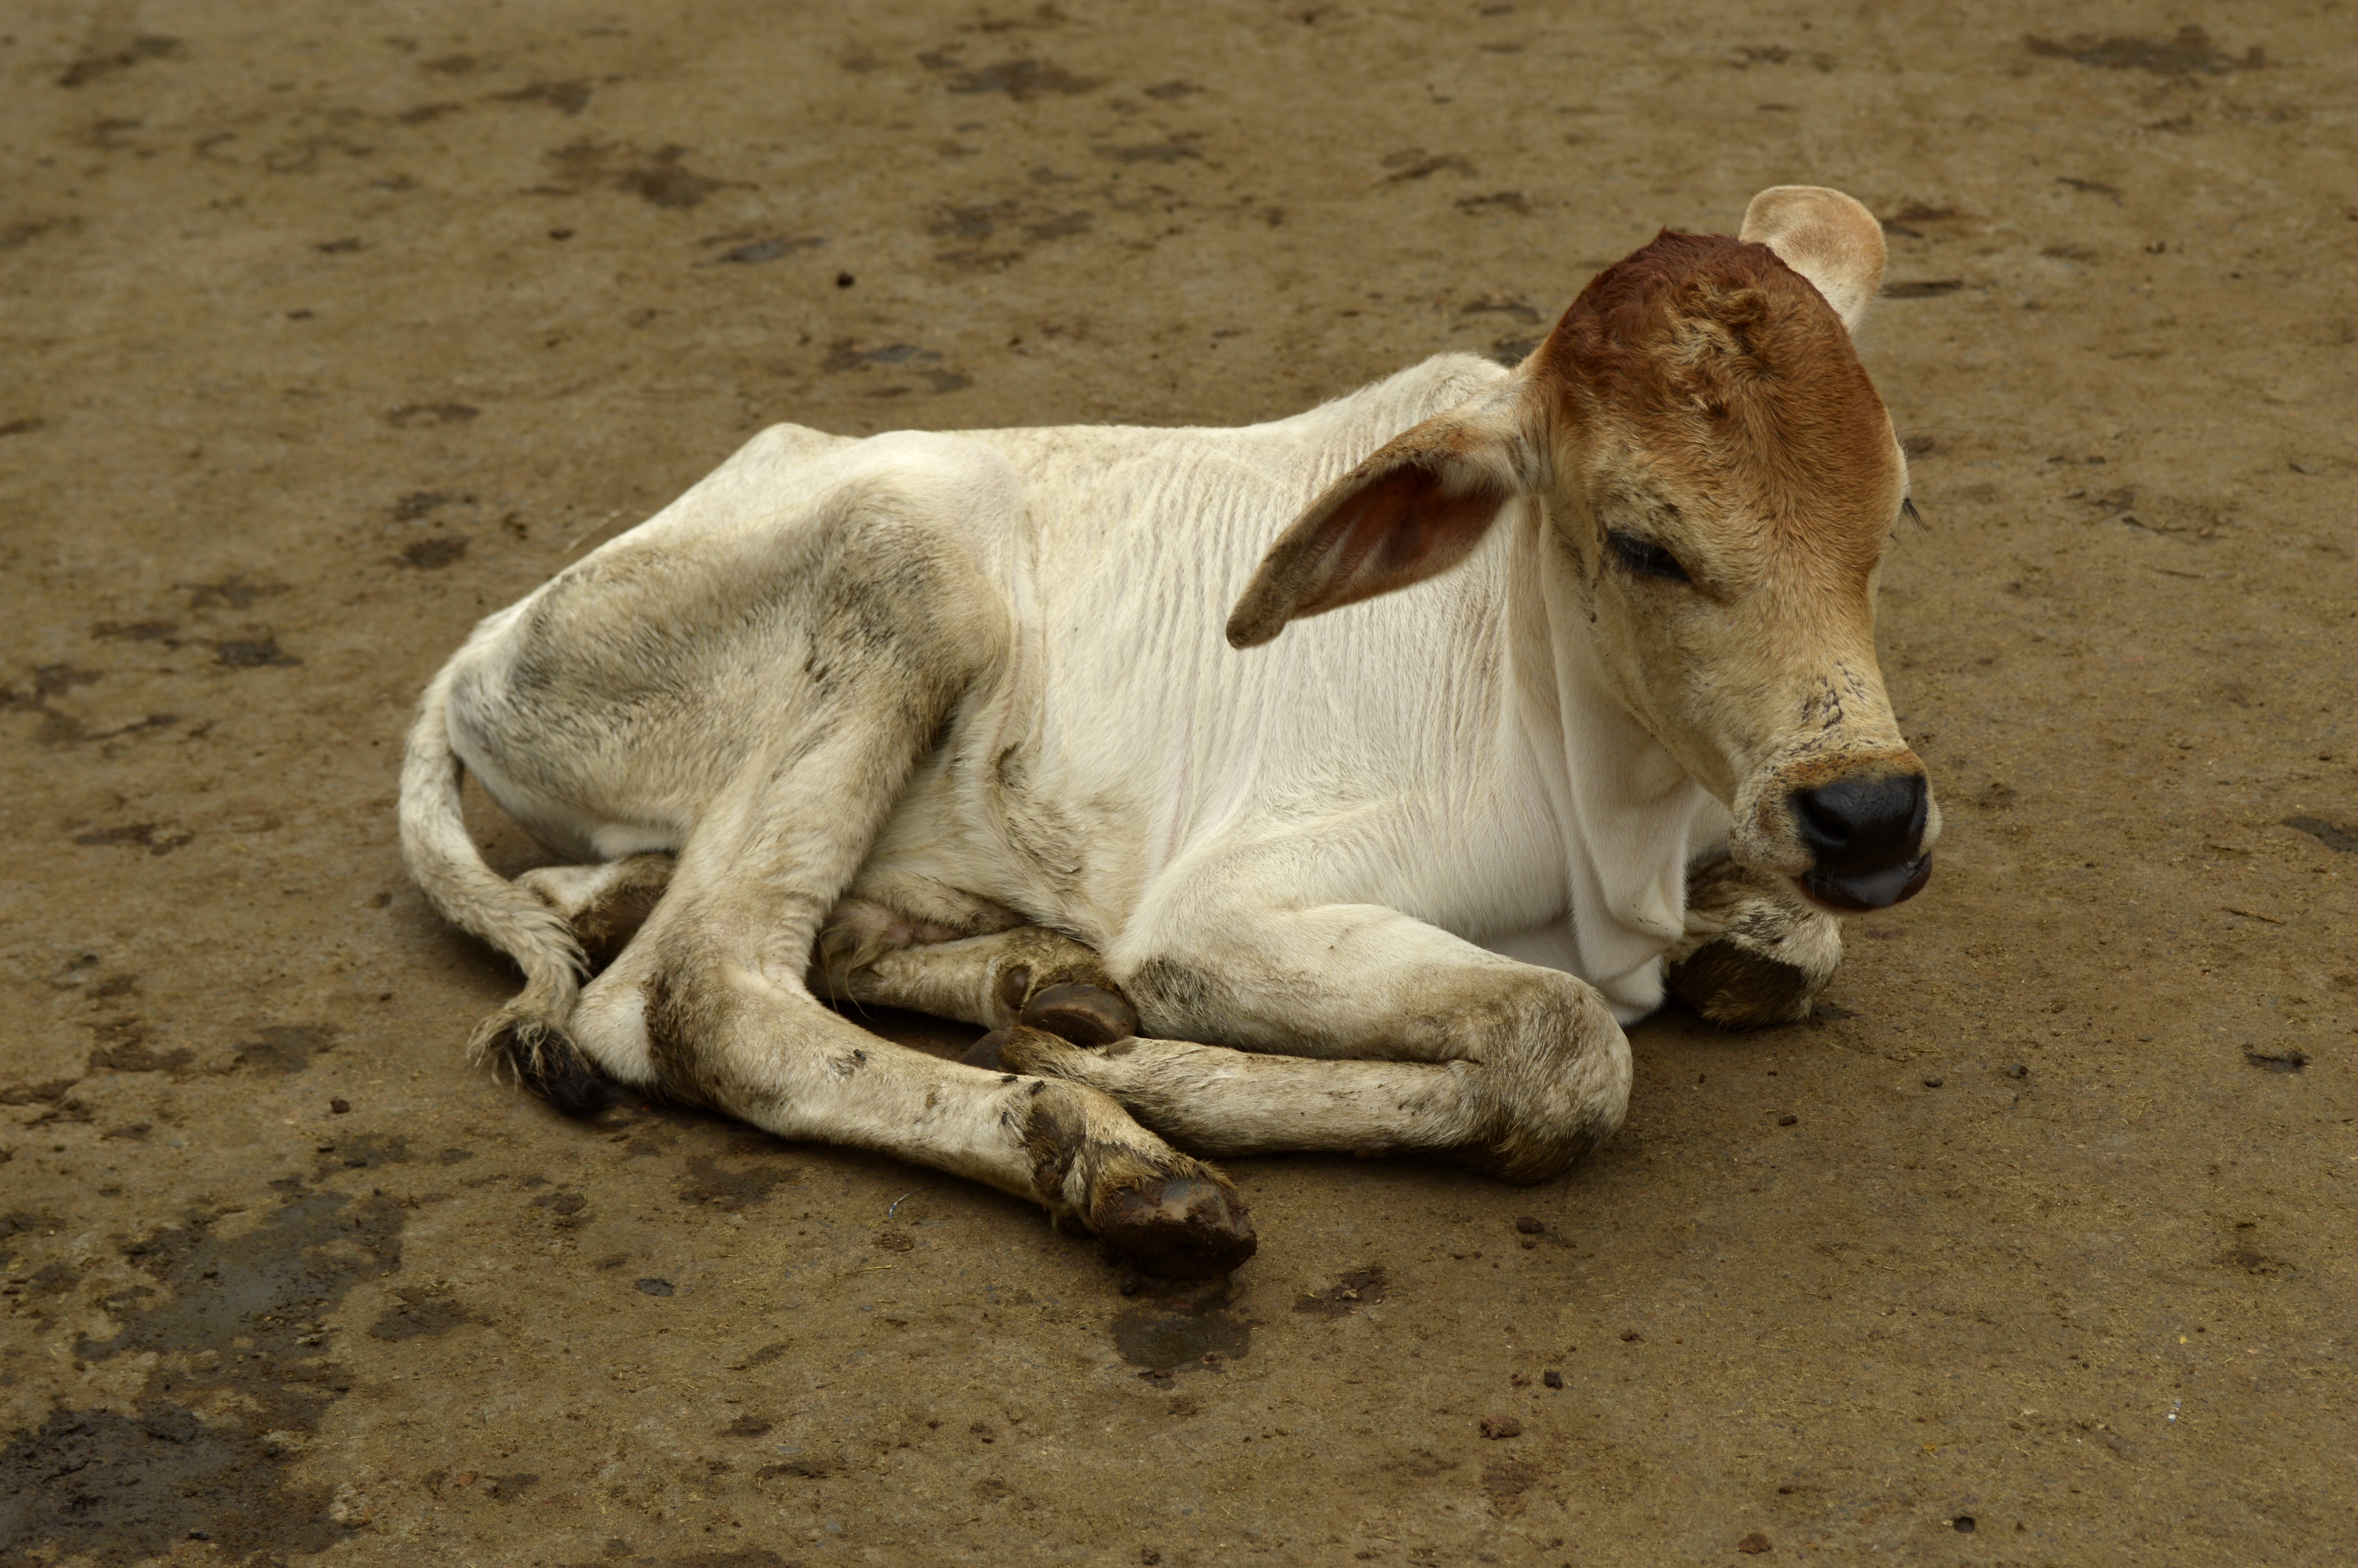 Calf, Raisen district, Madhya Pradesh, India